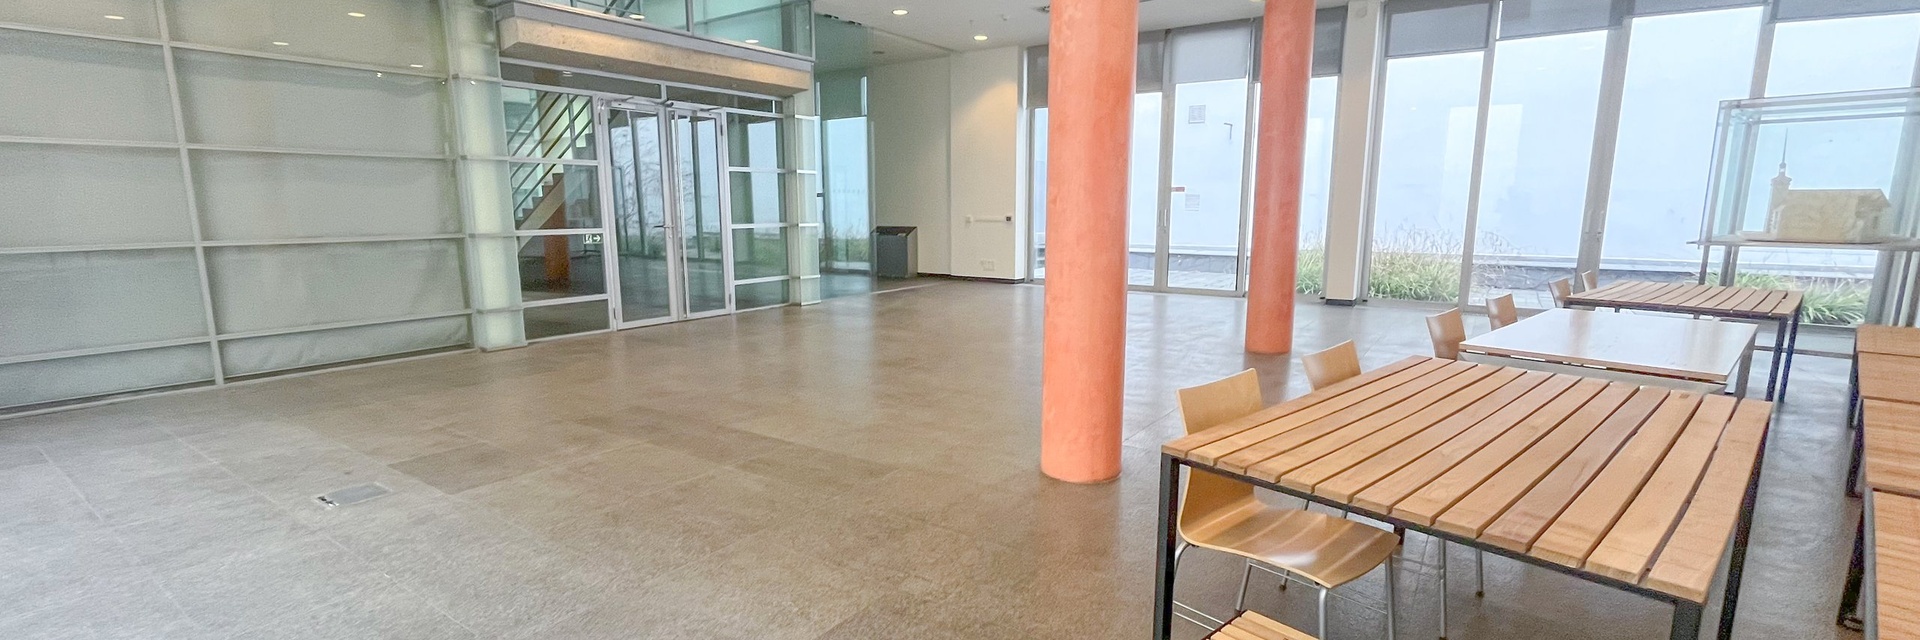 Pronájem klimatizovaných kancelářských prostor 133 m², ul. Rašínova, v těsné blízkosti Náměstí Svobody